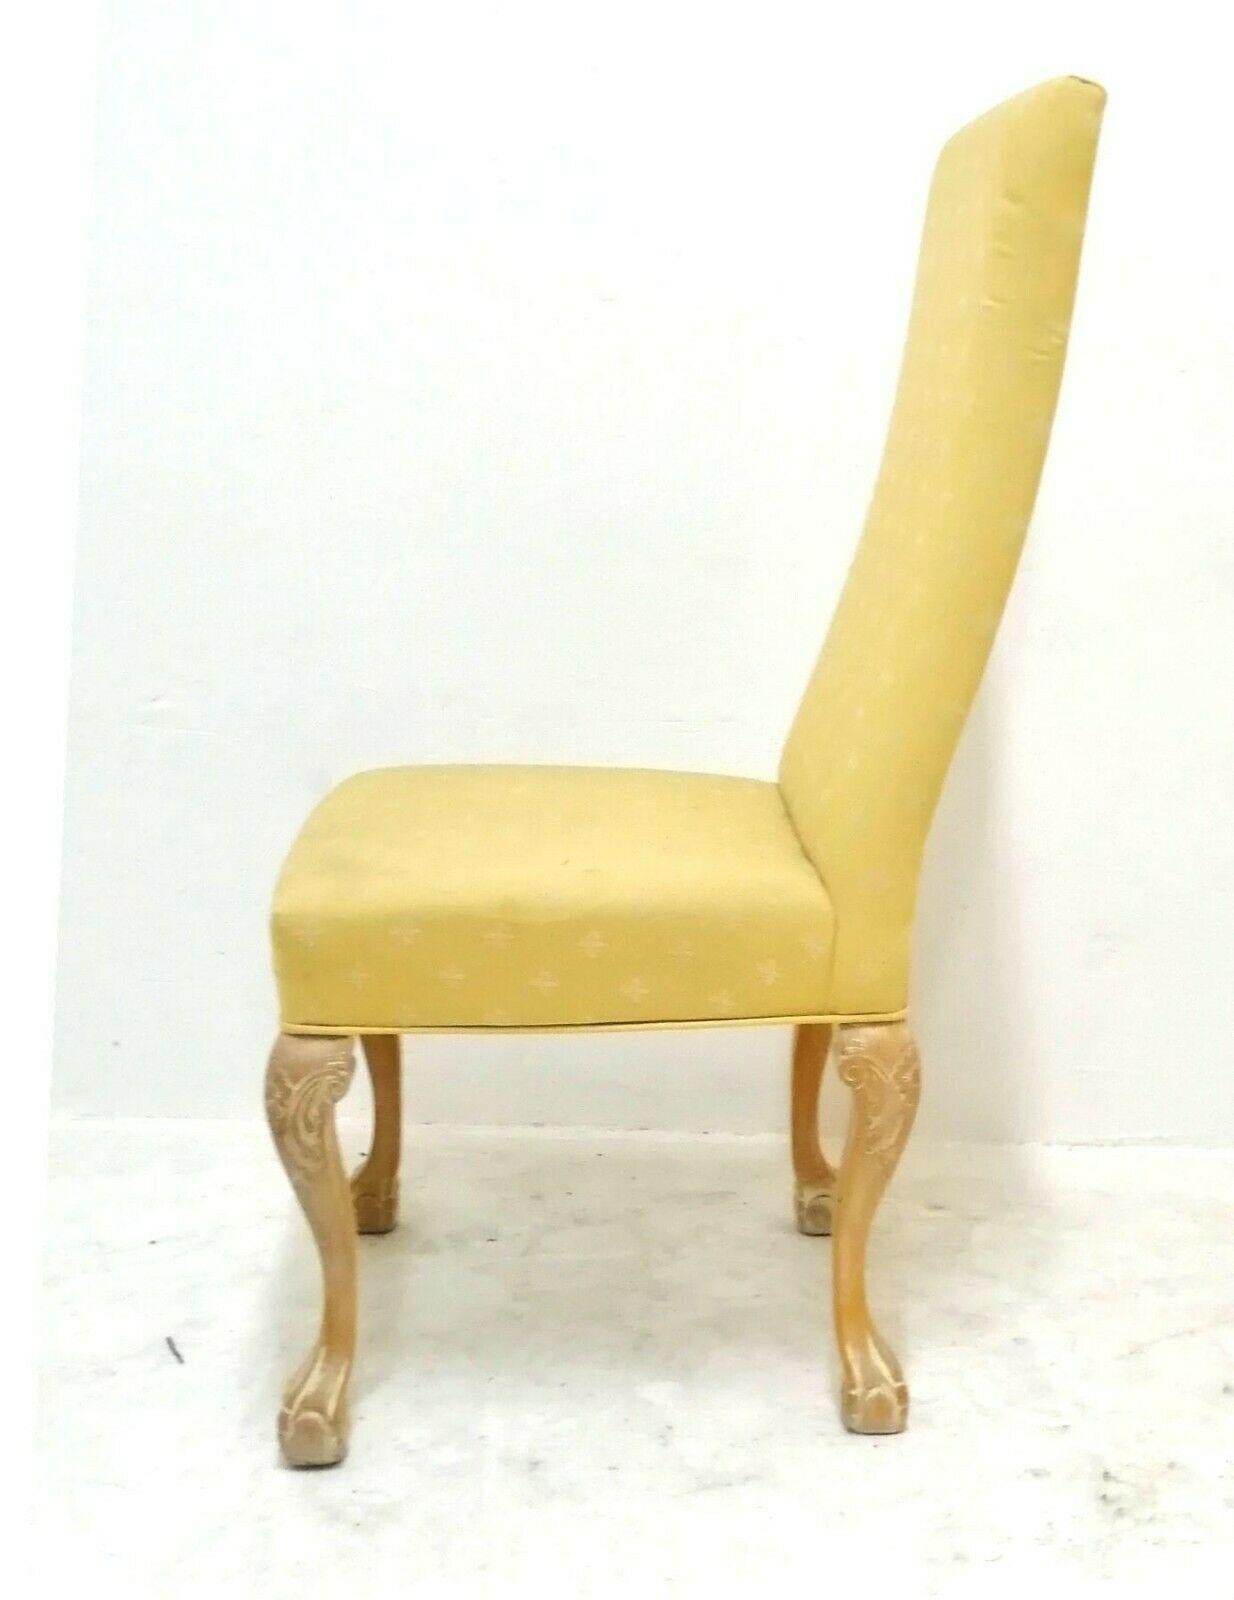 Lot de quatre chaises classiques en bois sculpté et décapé avec tissu de couleur jaune clair

ils mesurent 110 cm de hauteur, 53 cm de largeur, 65 cm de profondeur et 50 cm de hauteur du siège par rapport au sol

En très bon état, comme le